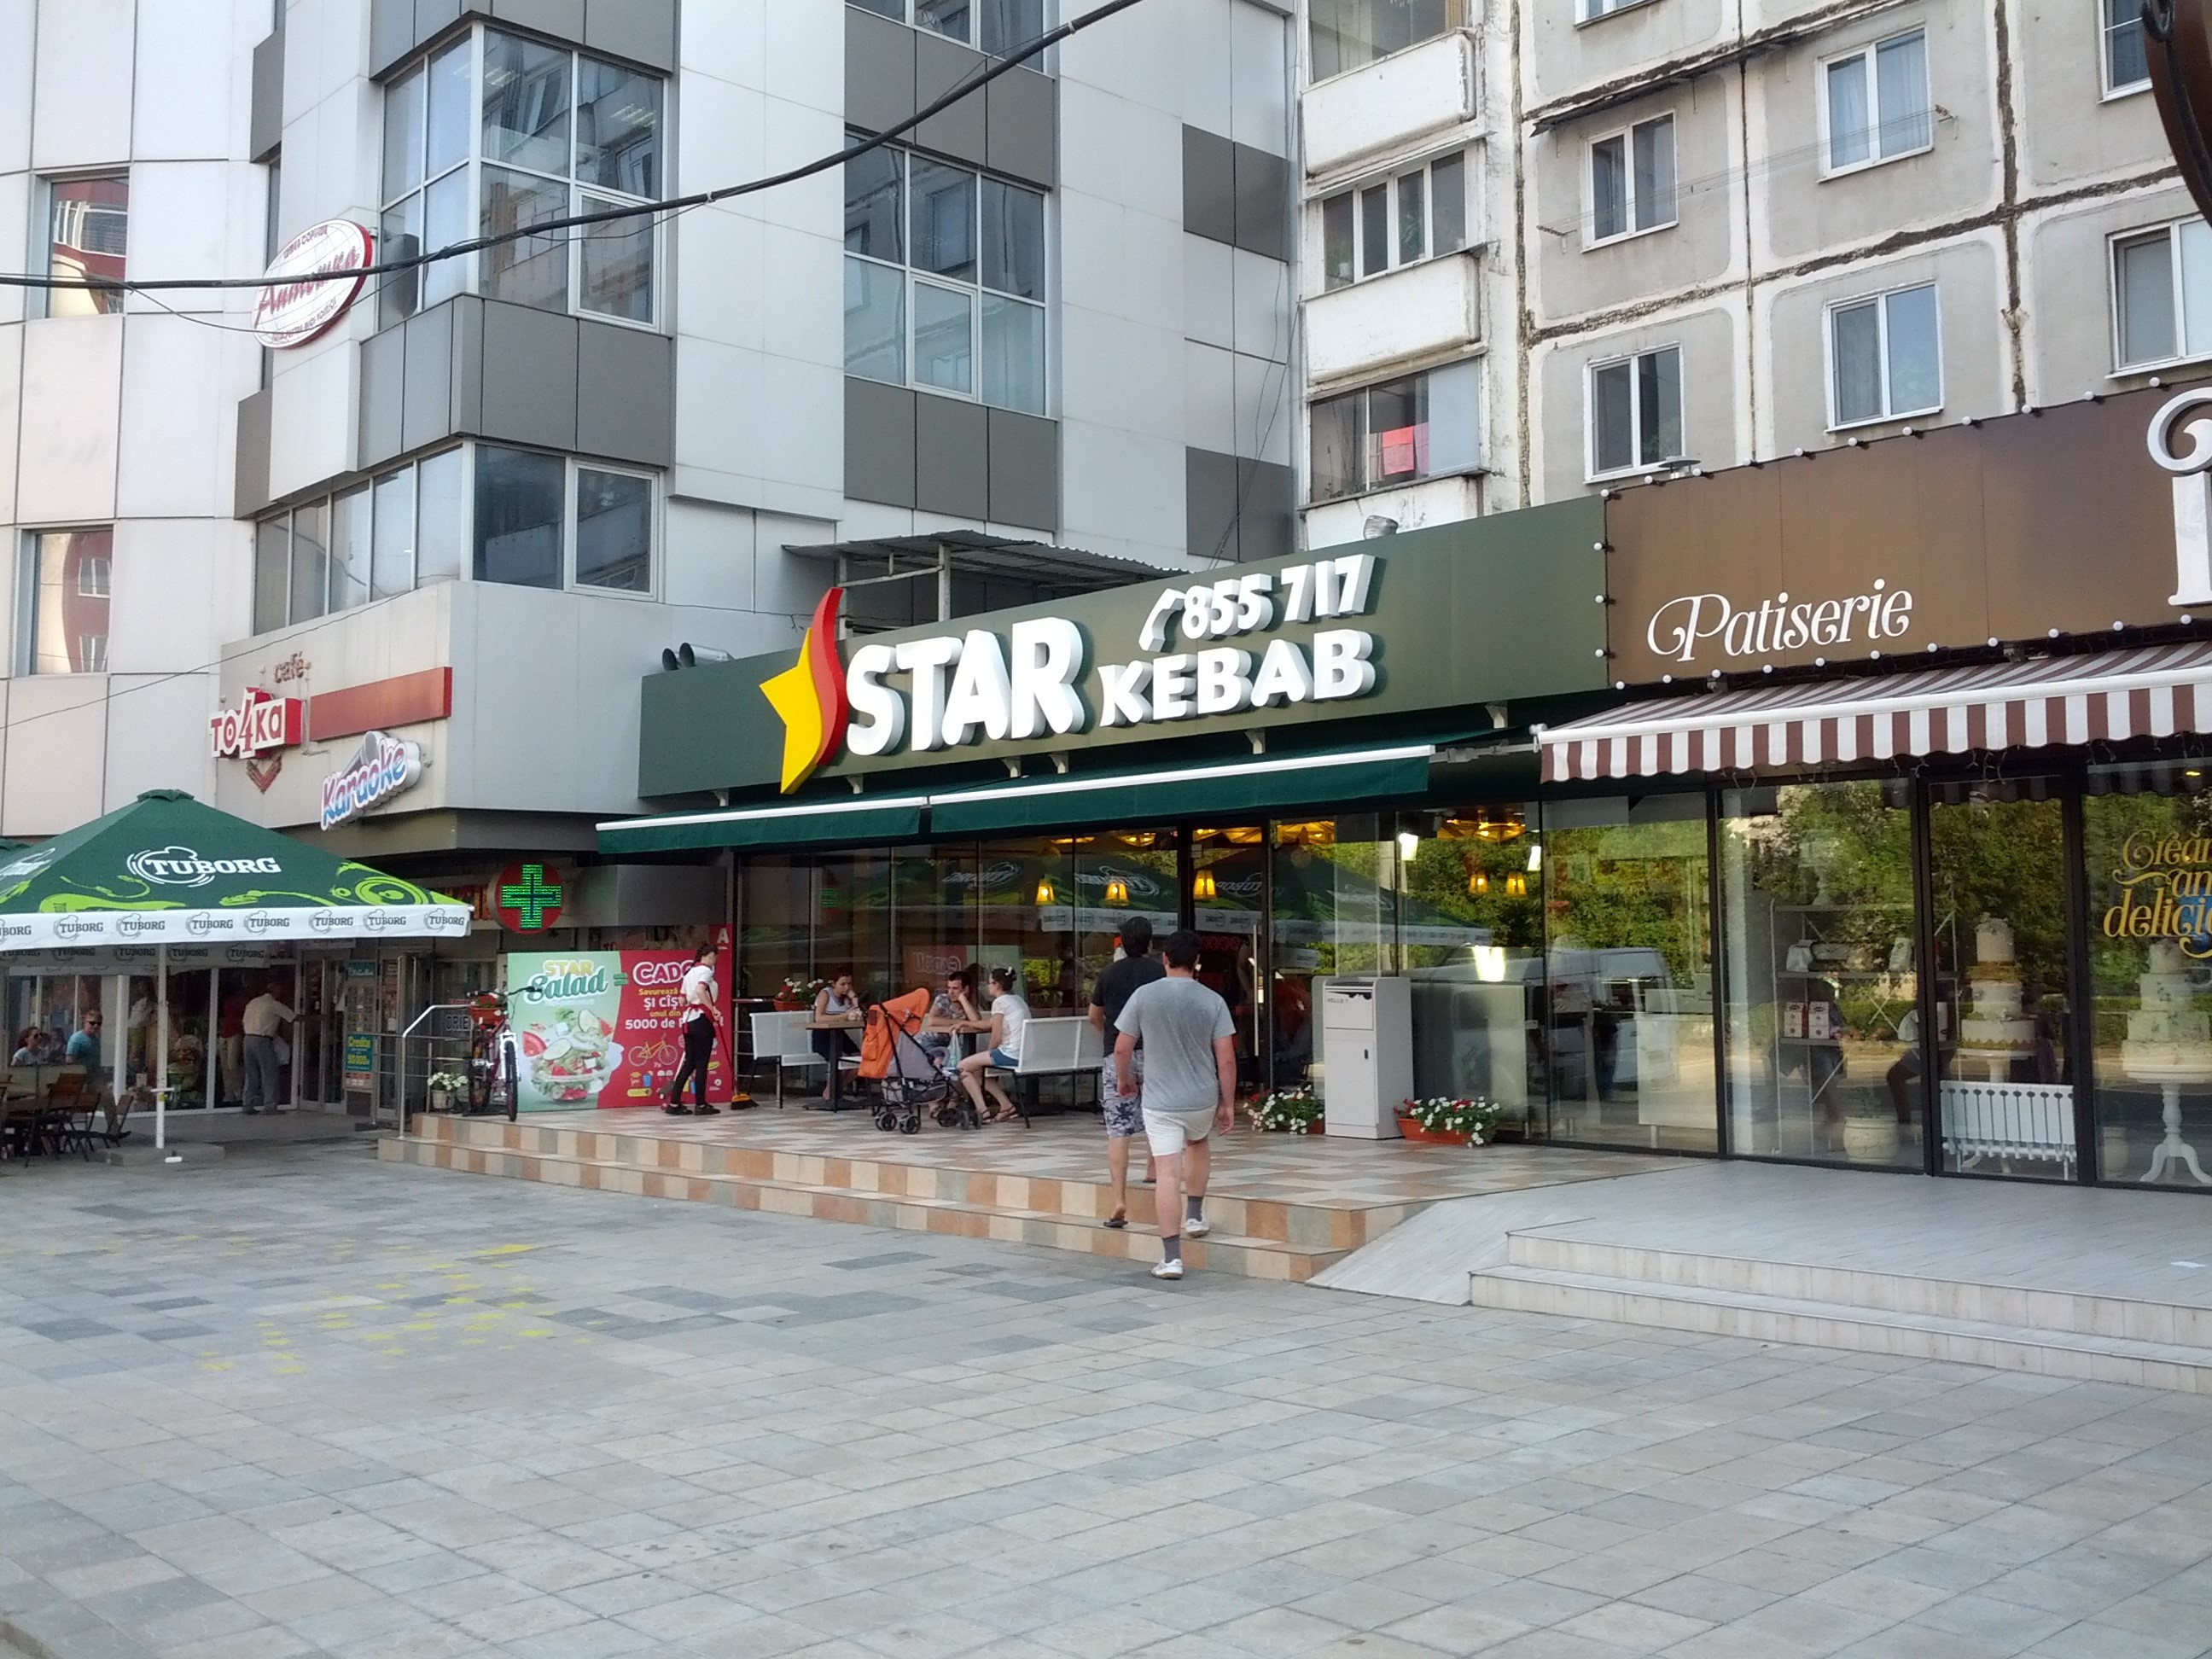 MD, Orasul Chisinau, Ciocana, Star Kebab Tel. 855 717